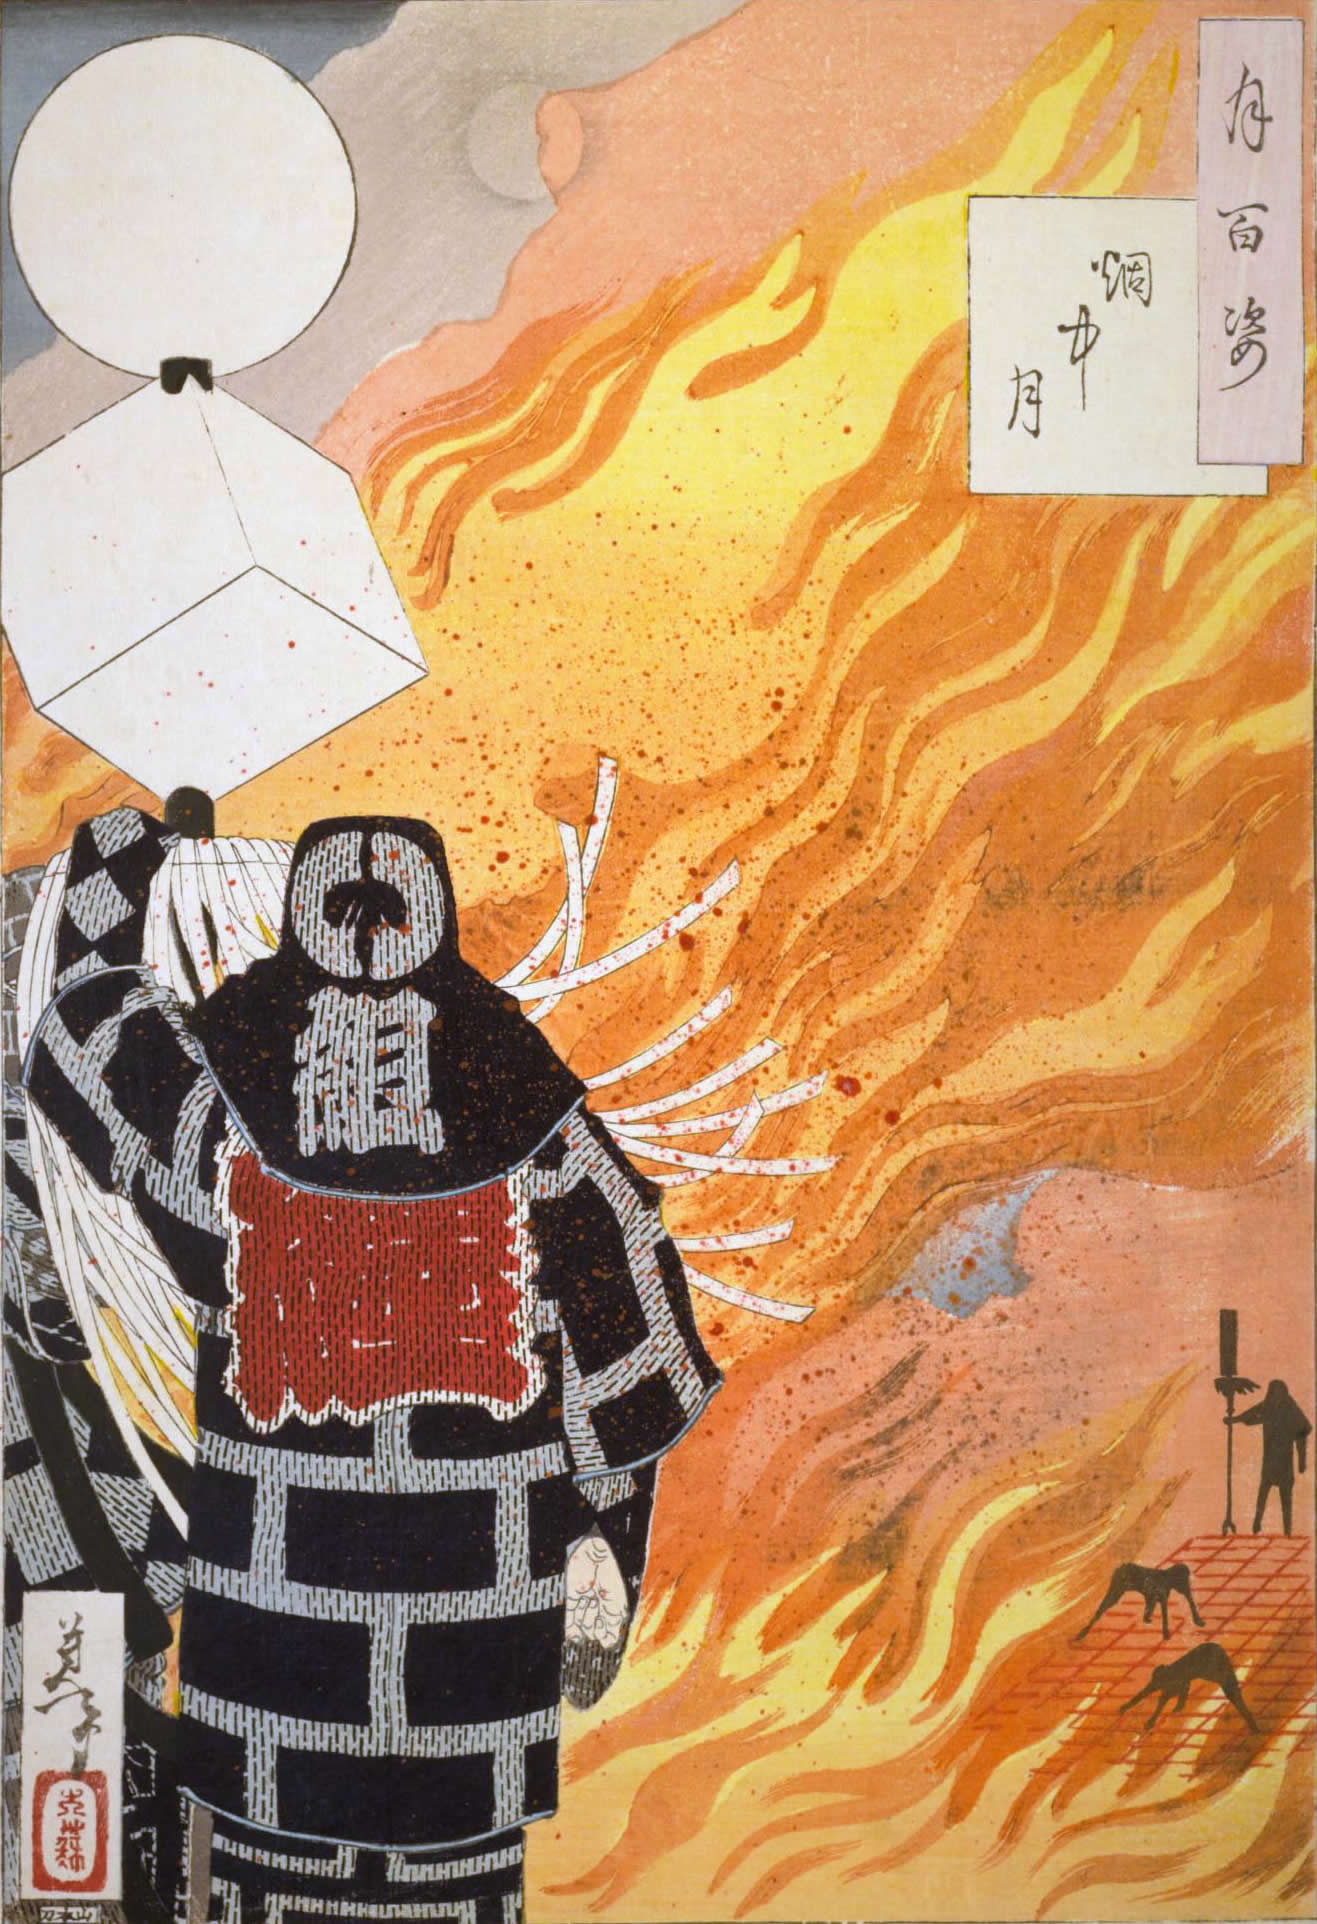 みんなの知識 ちょっと便利帳】江戸町火消の道具 -『浮世絵・錦絵 